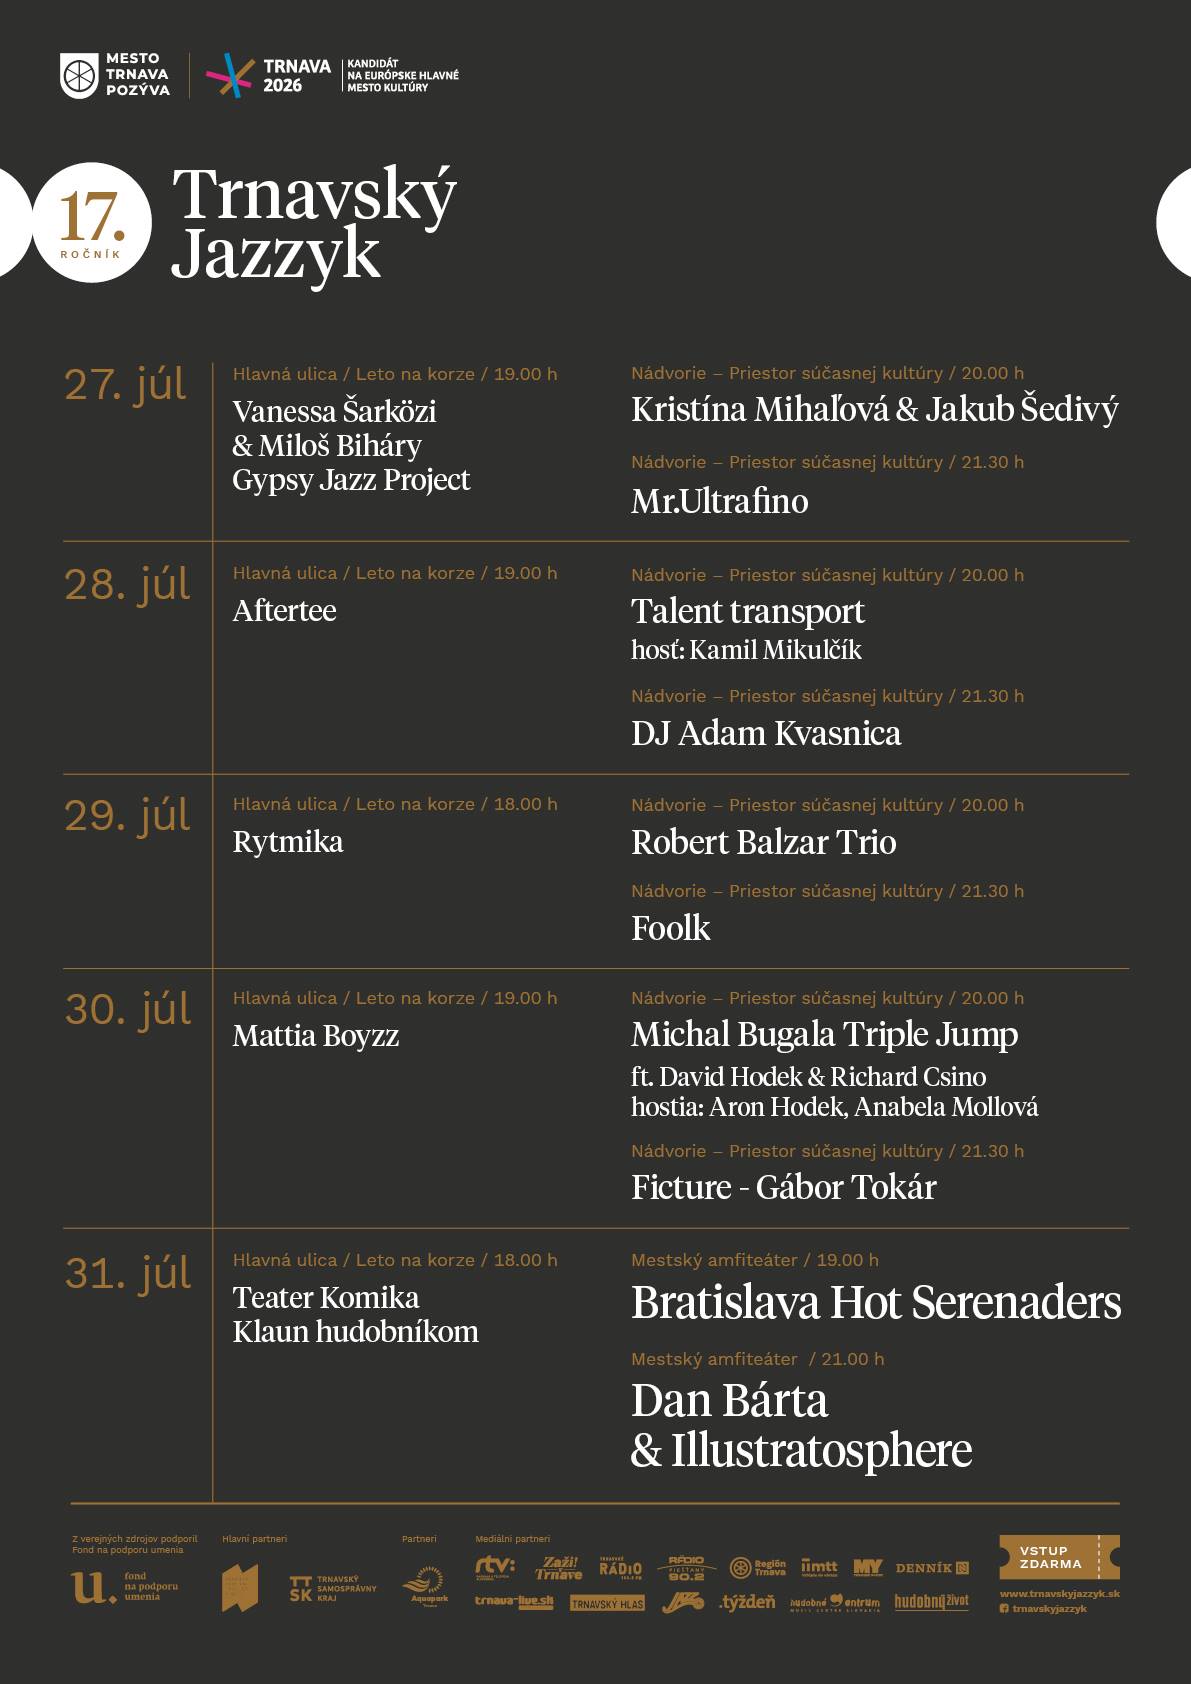 NOVÉ - - - Trnavský jazzyk 2020